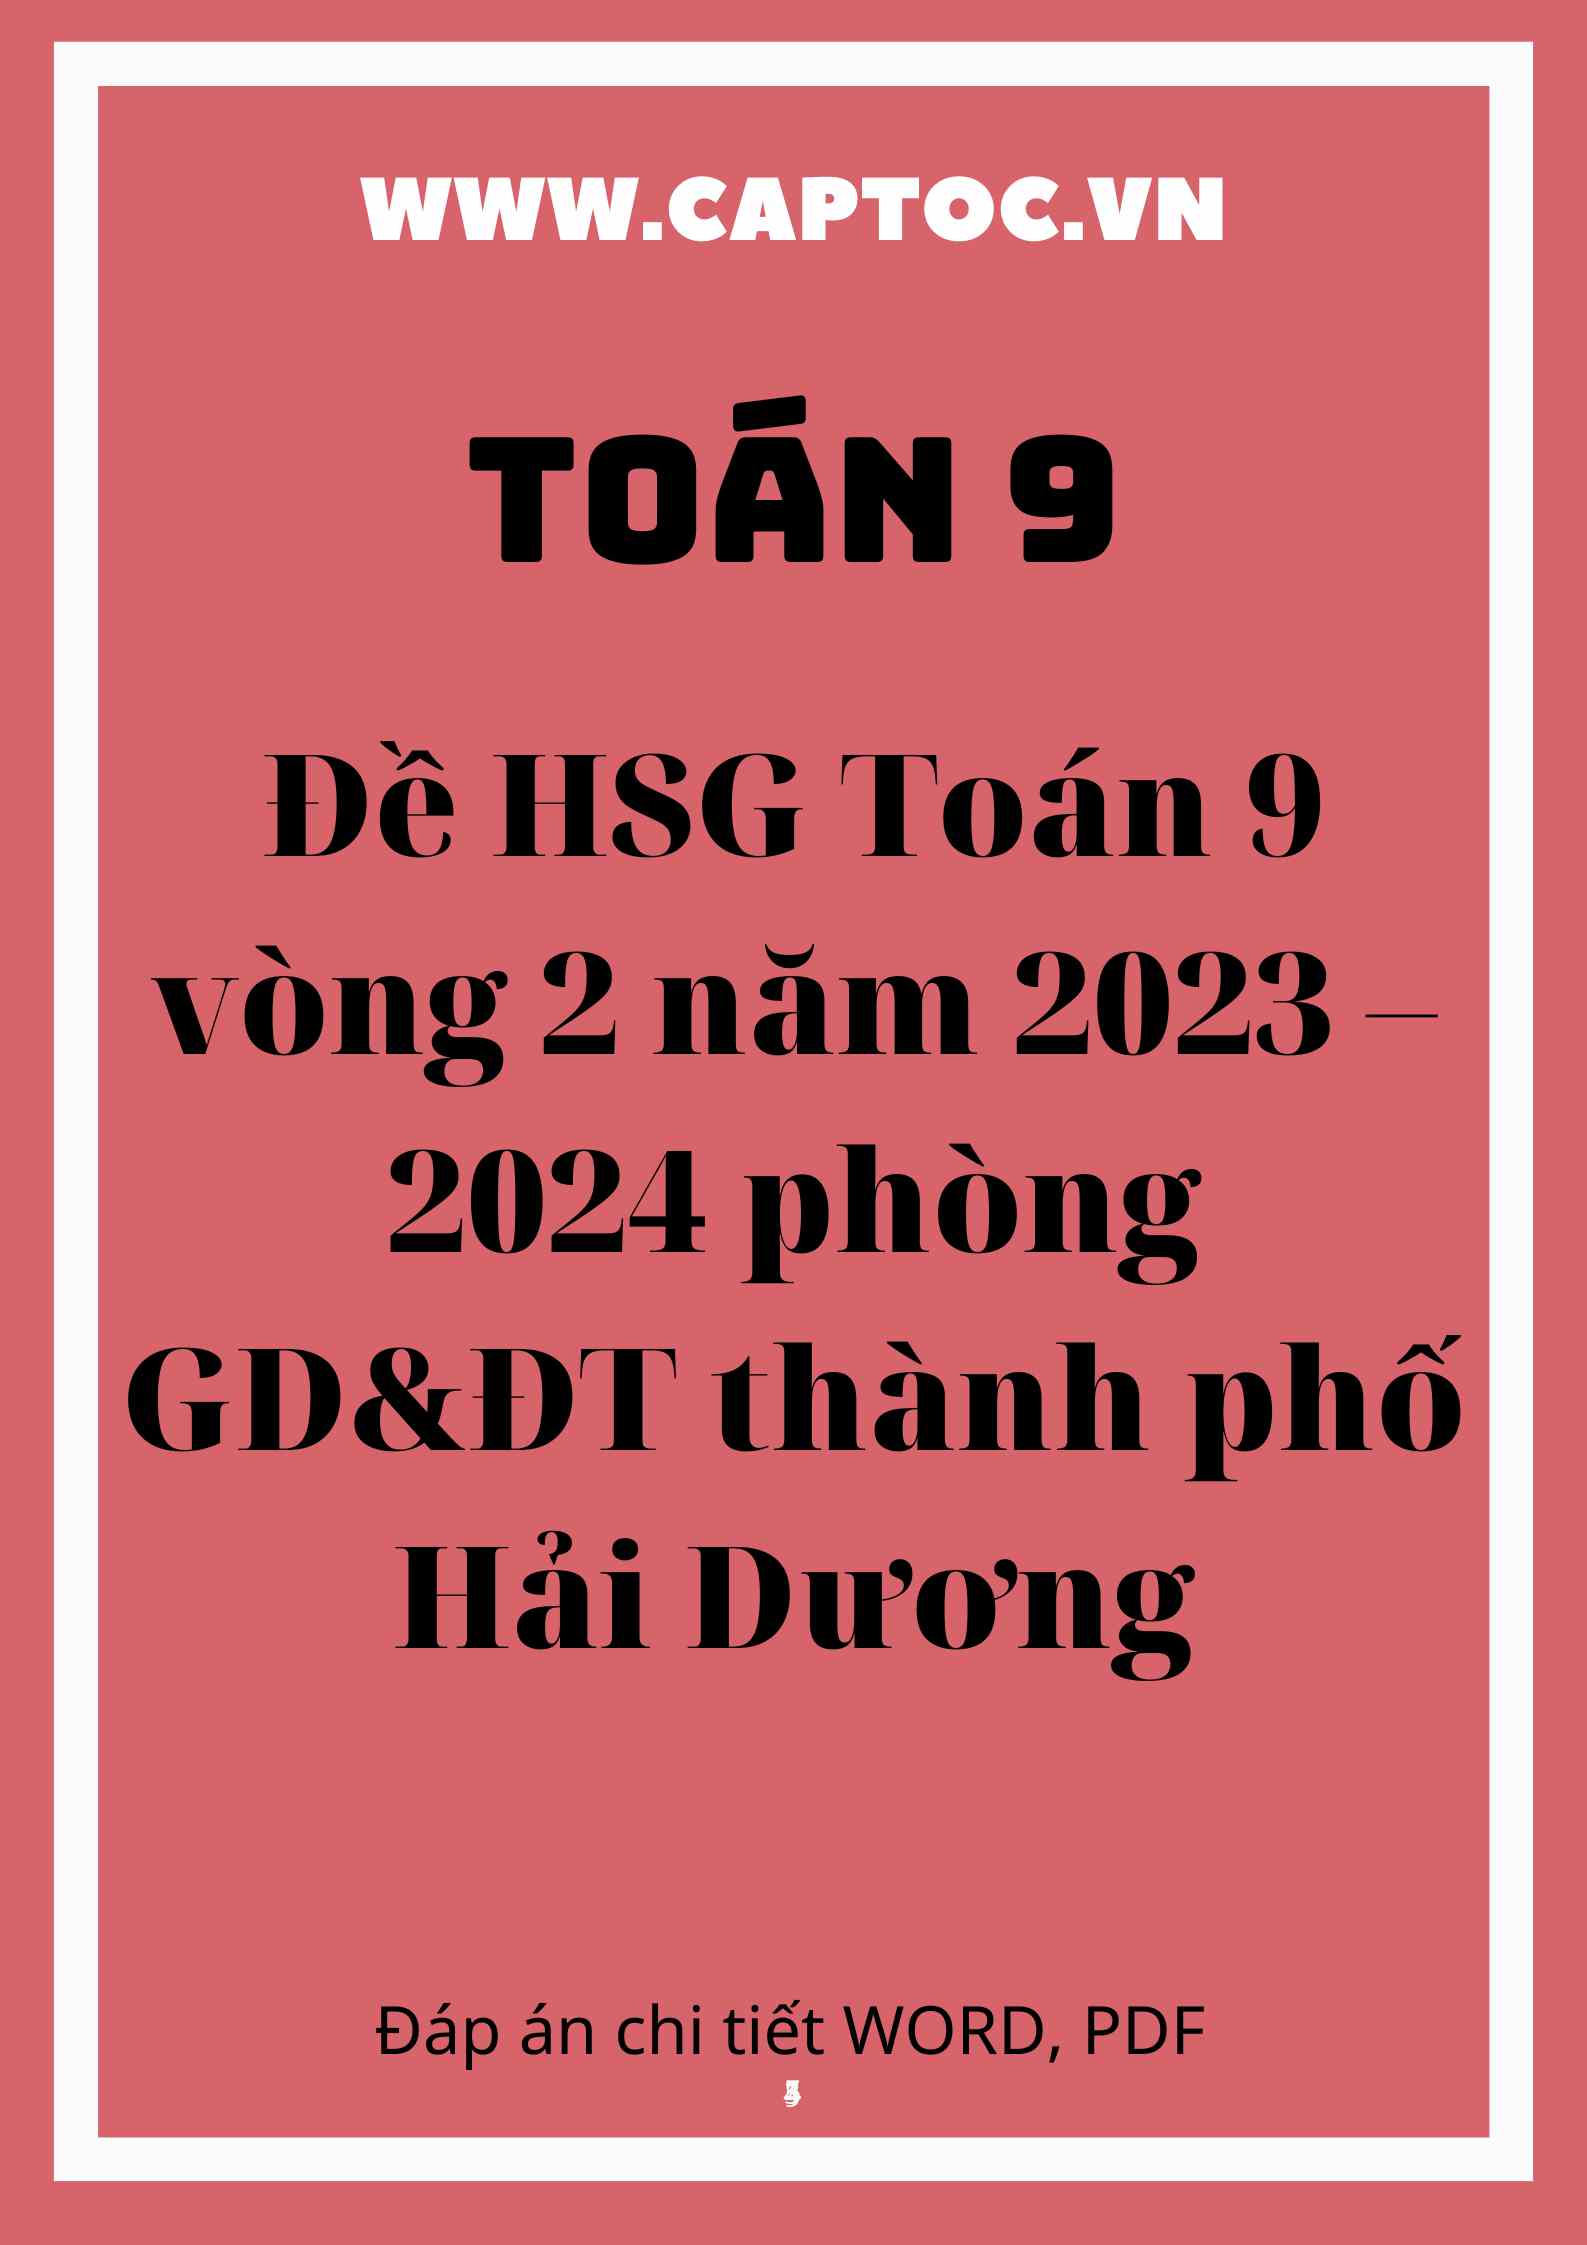 Đề HSG Toán 9 vòng 2 năm 2023 – 2024 phòng GD&ĐT thành phố Hải Dương